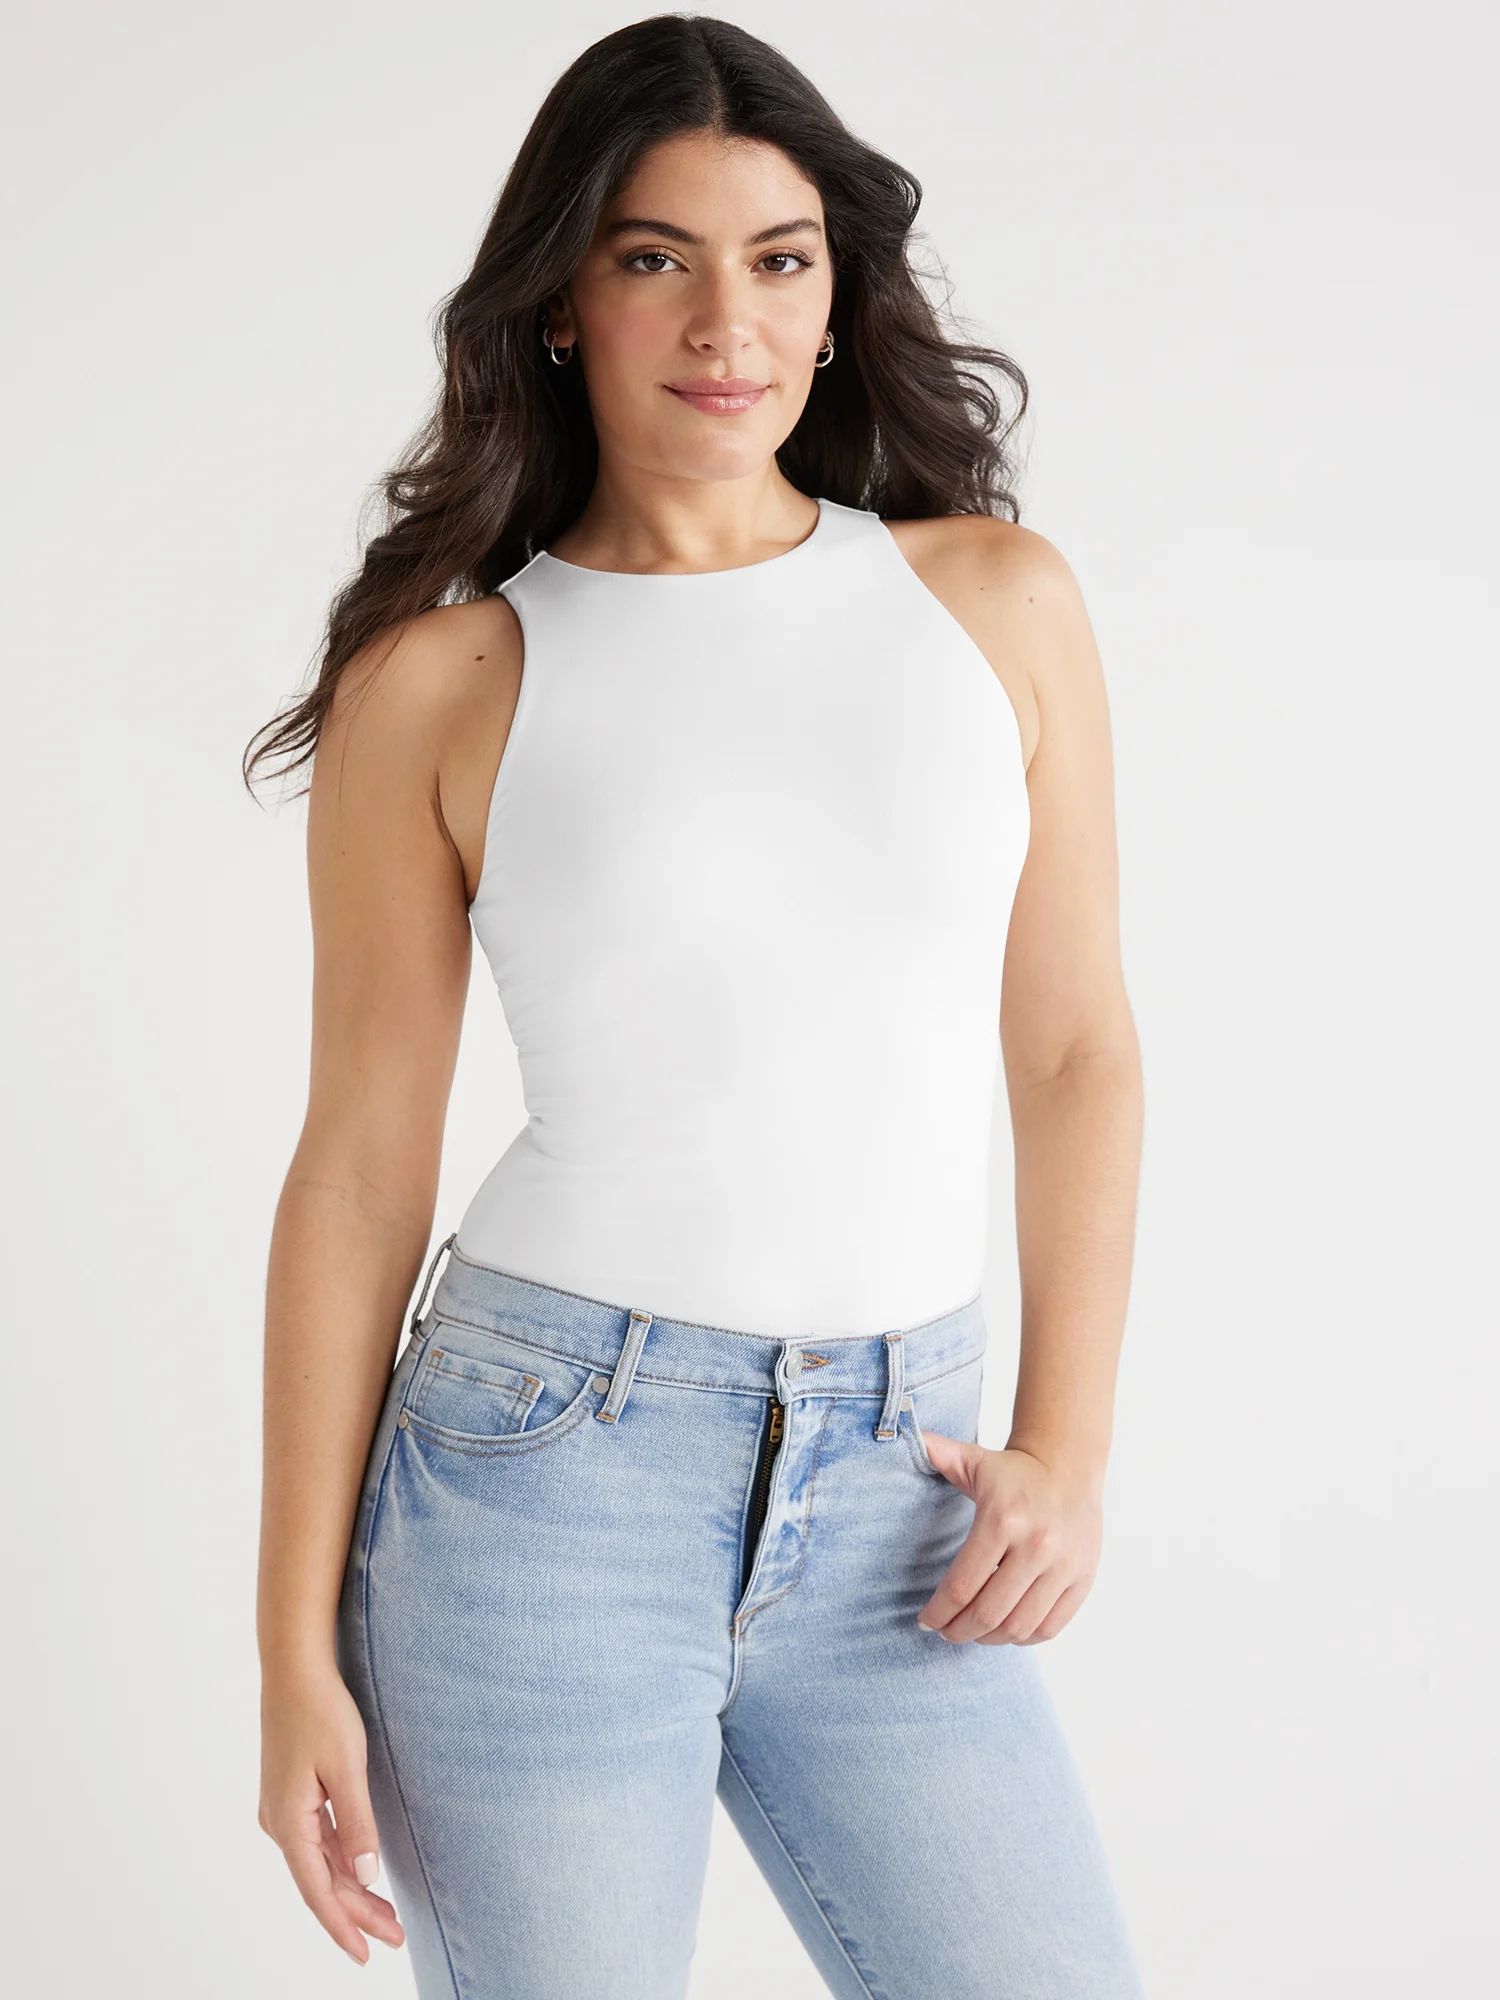 Sofia Jeans Women's High Neck Tank Top, Sizes XS-XXXL - Walmart.com | Walmart (US)